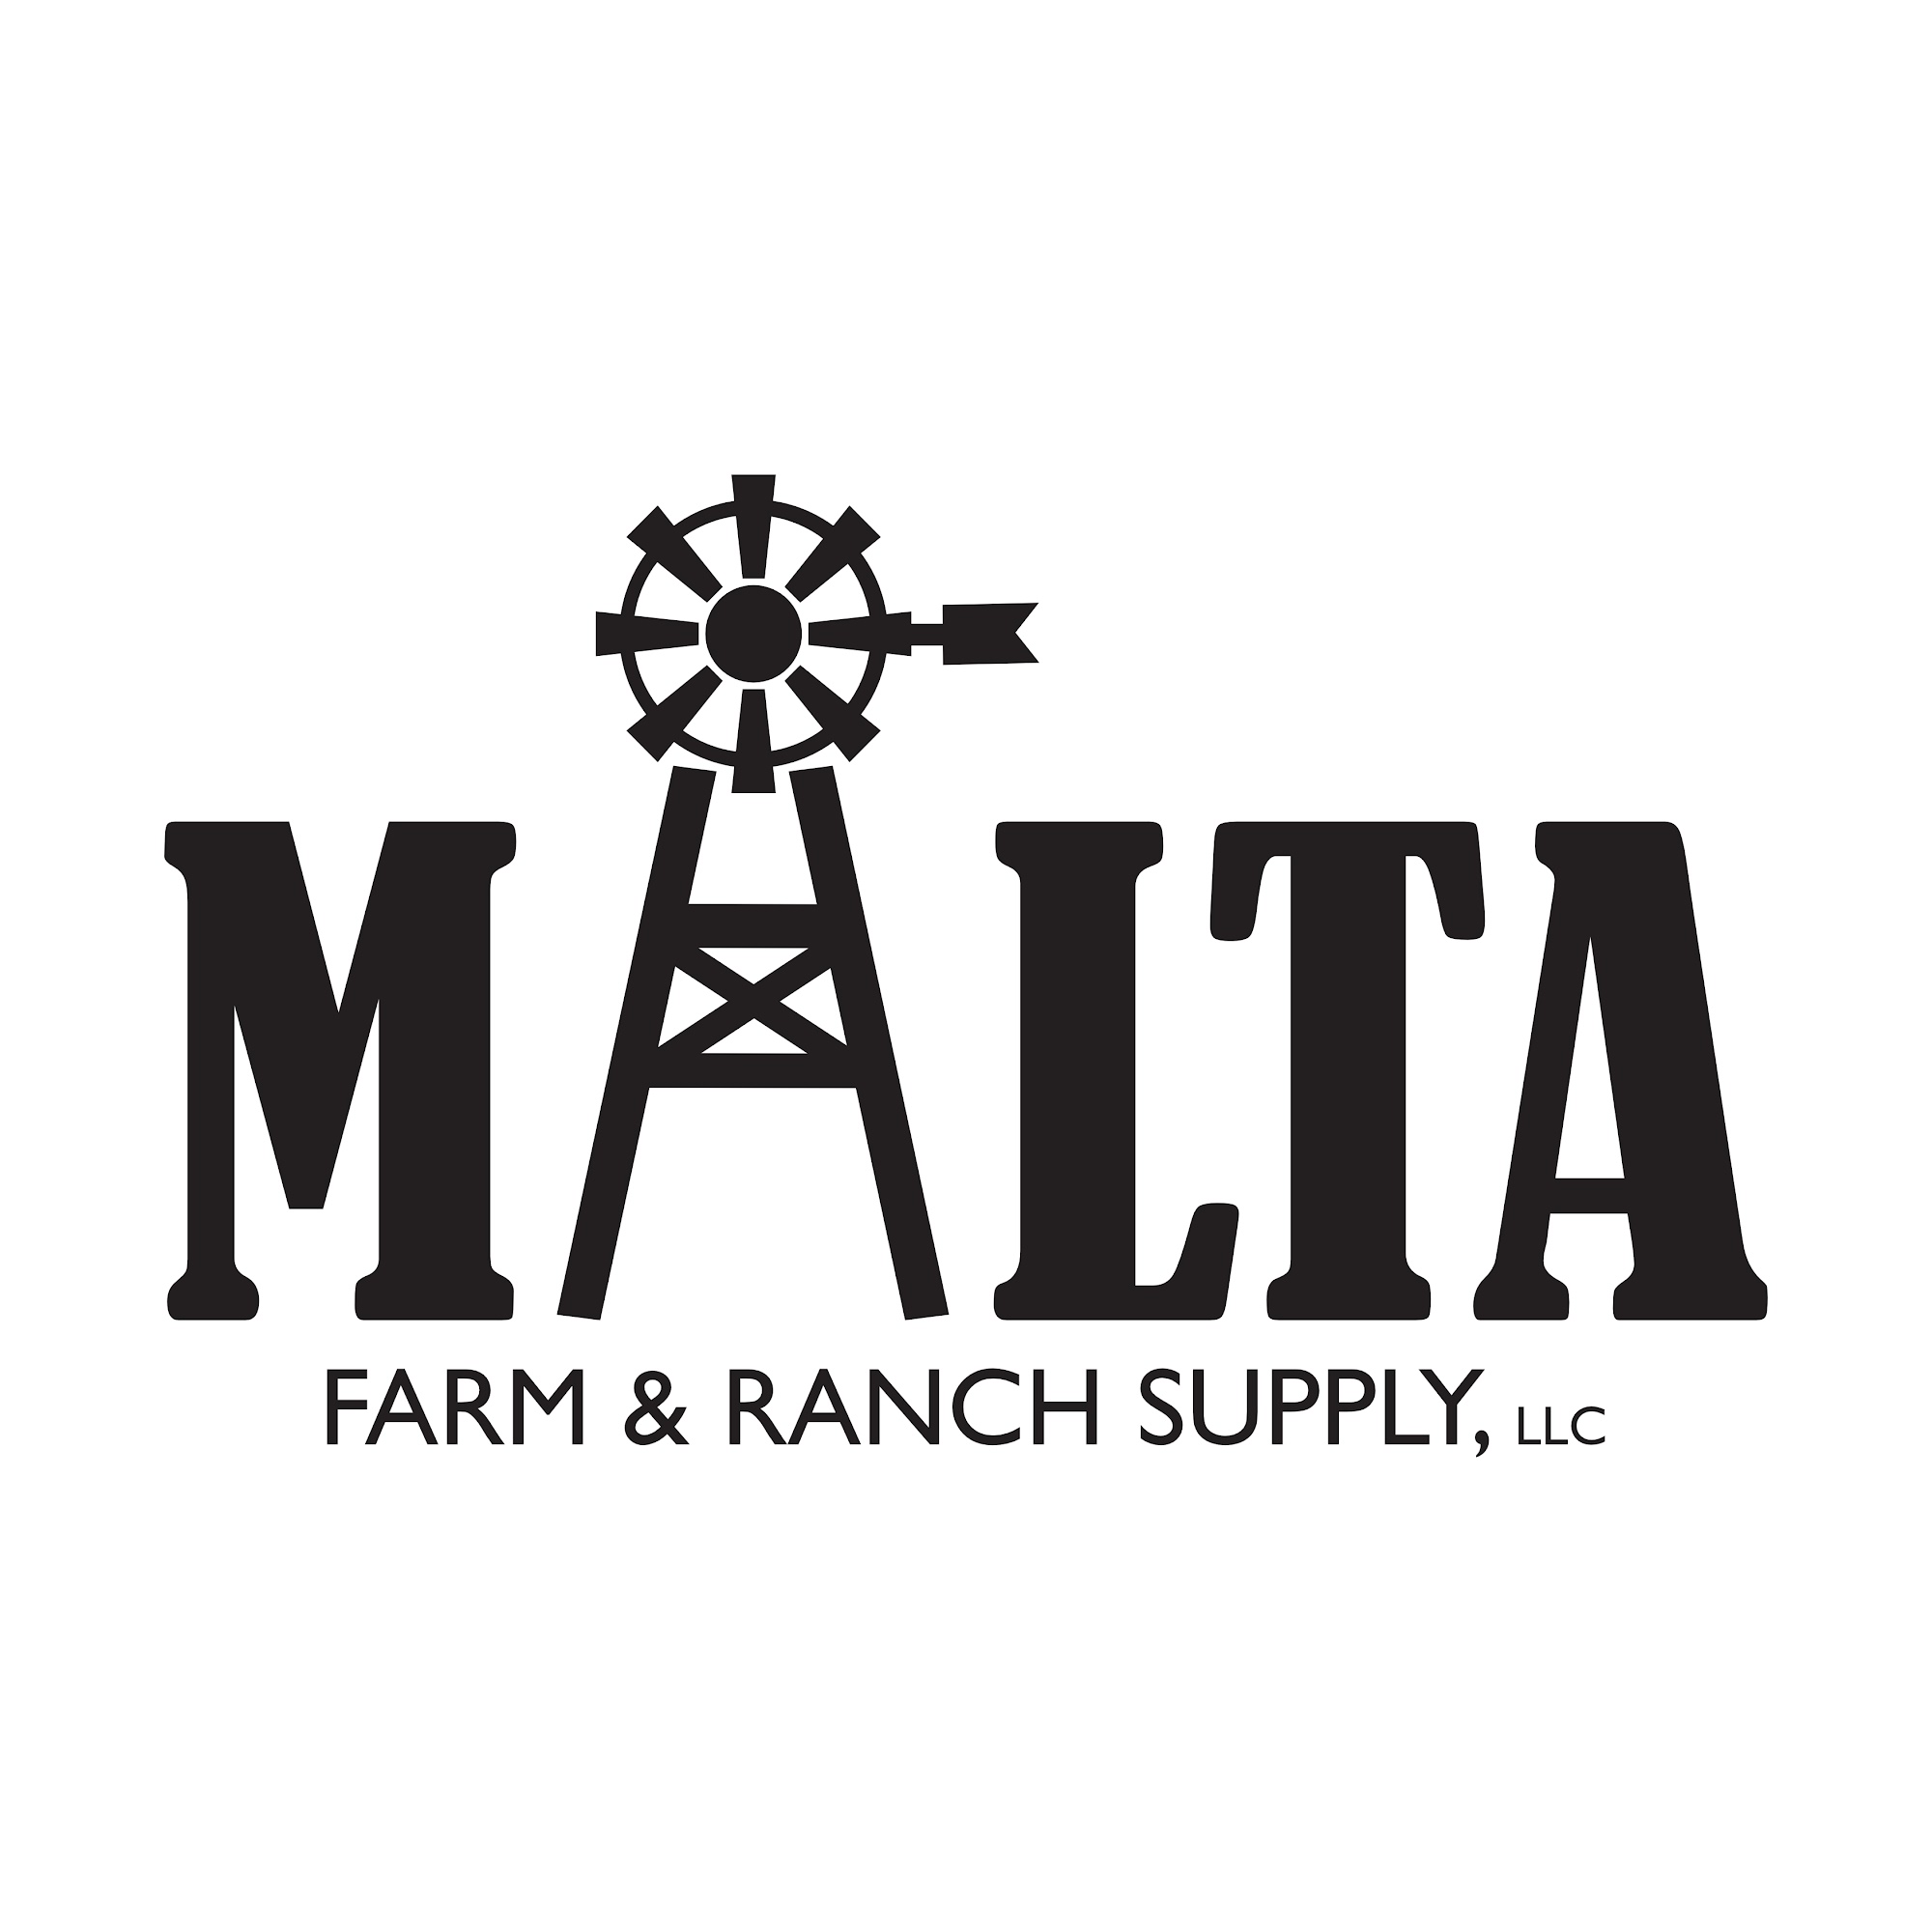 Malta Farm & Ranch Supply 30 Main St S, Malta Idaho 83342